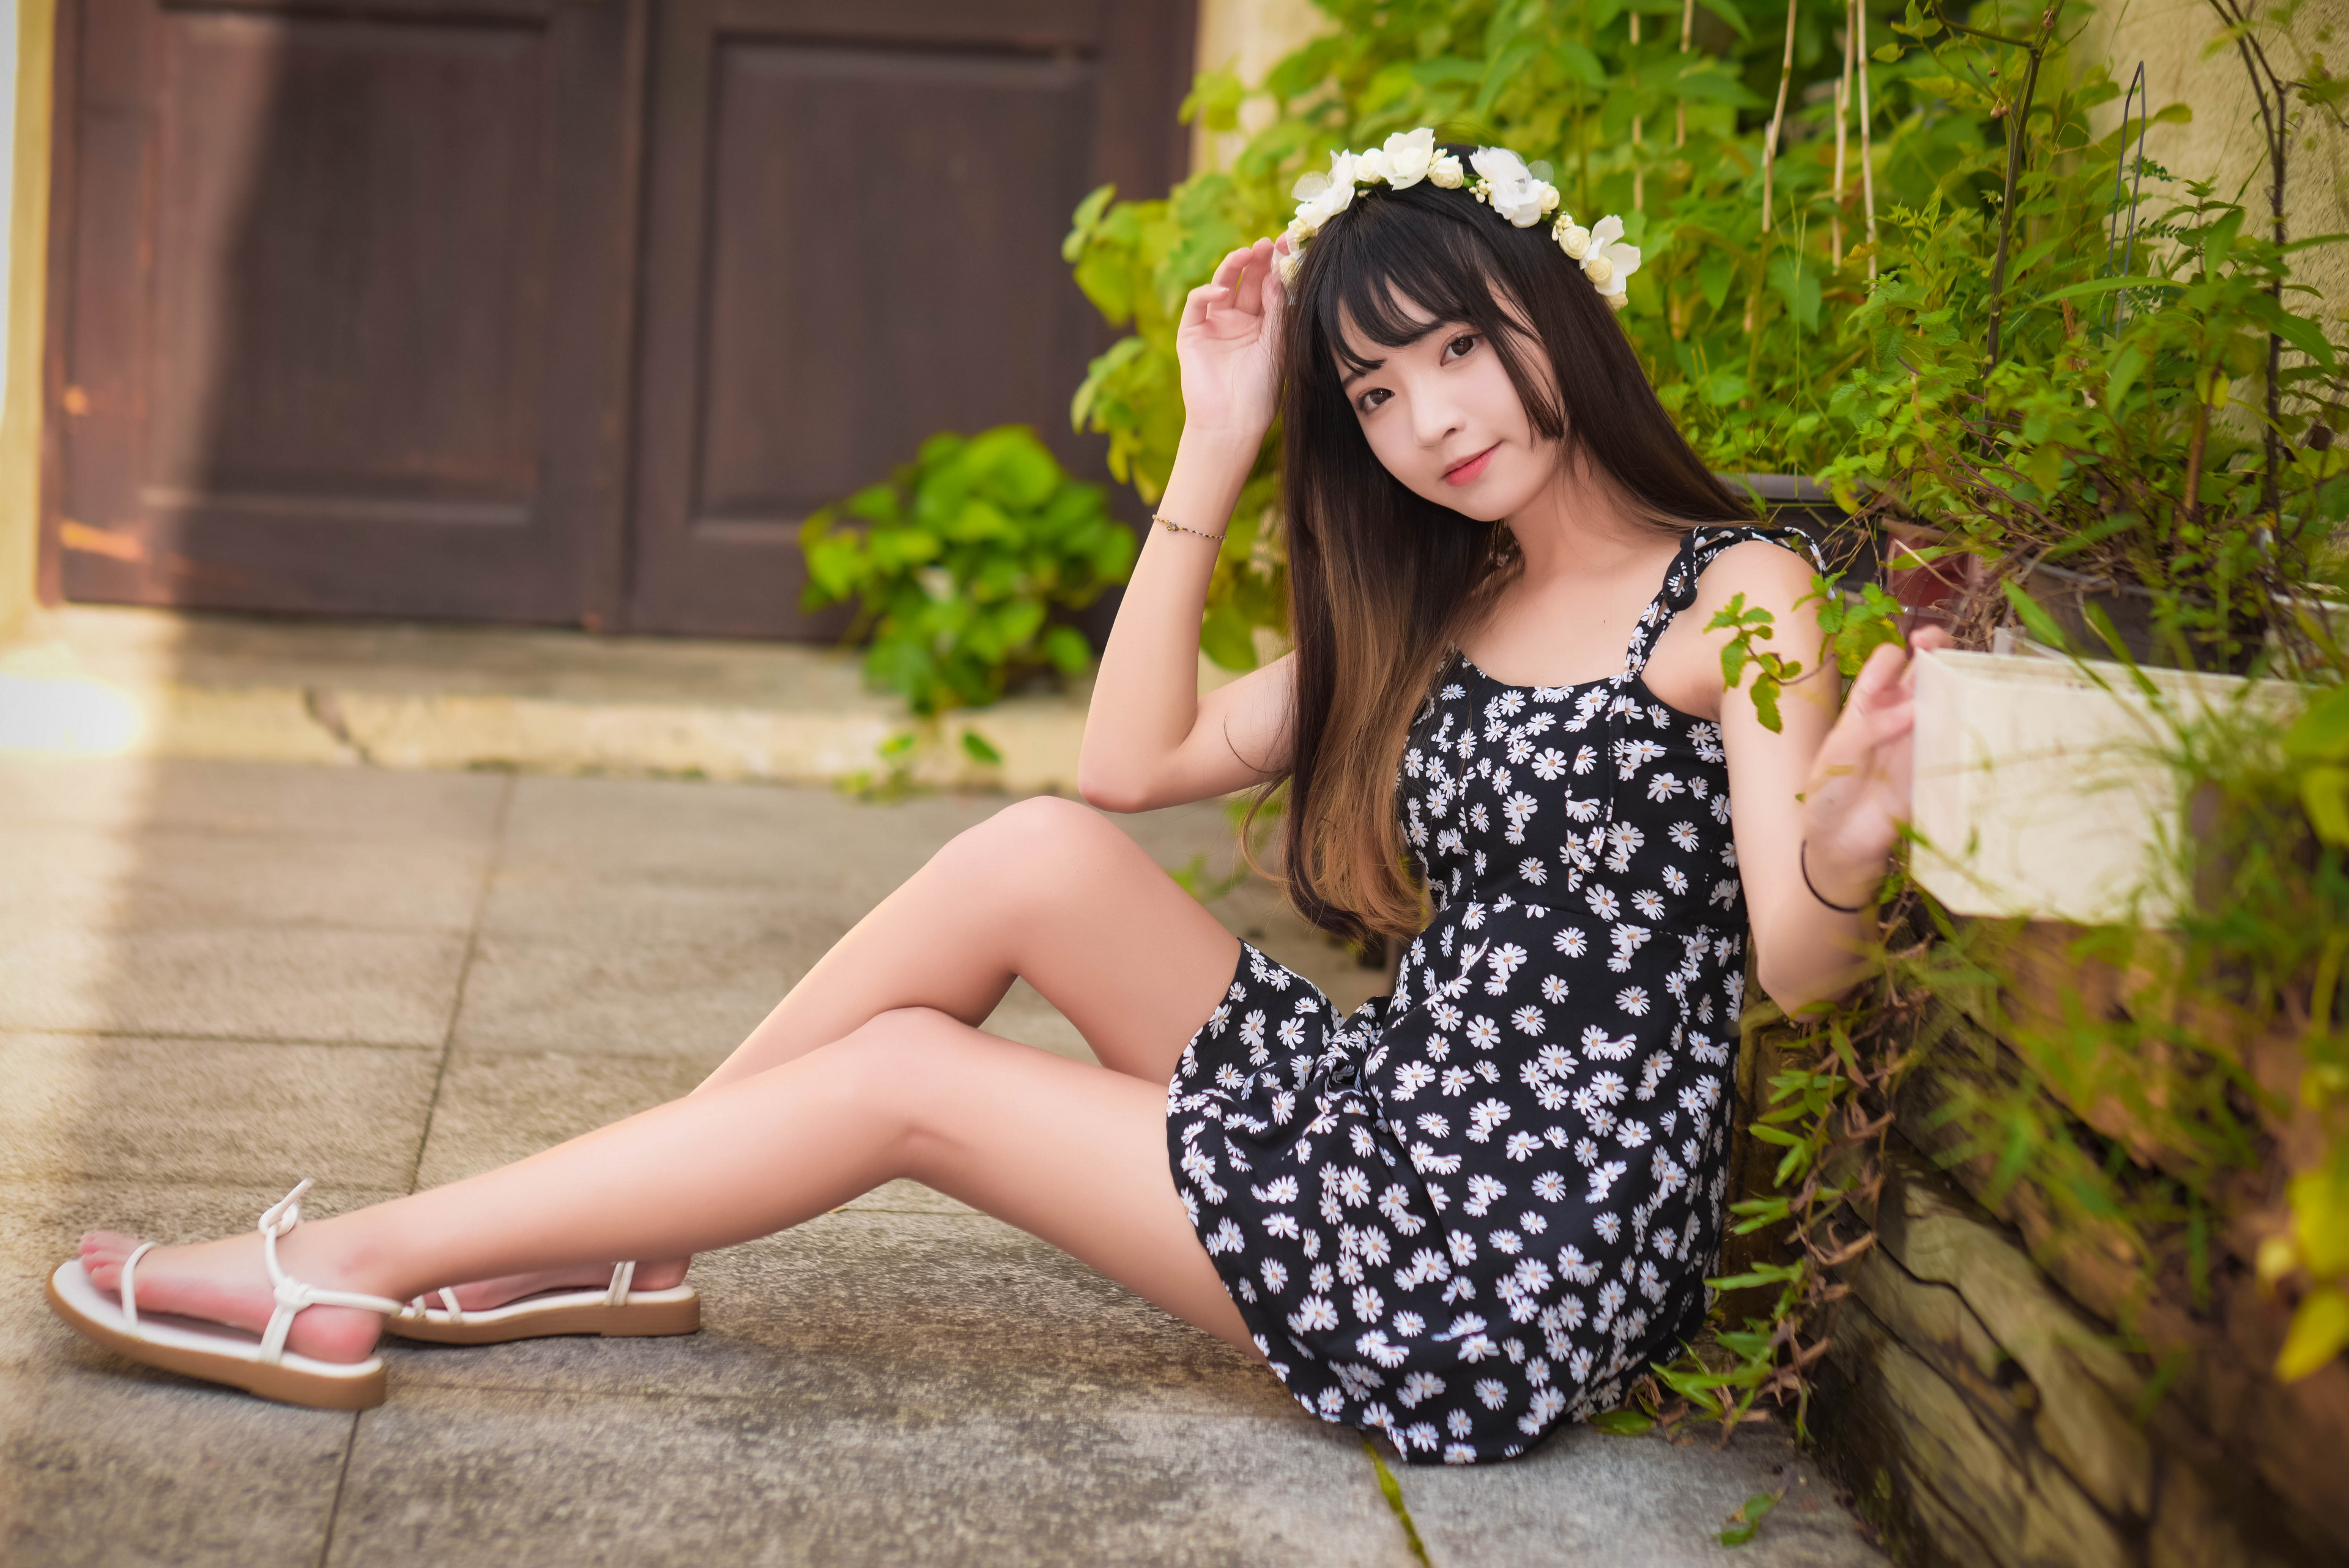 Asian Model Women Long Hair Dark Hair Flower Dress Sitting Barefoot Sandal Flower Crown 3840x2563